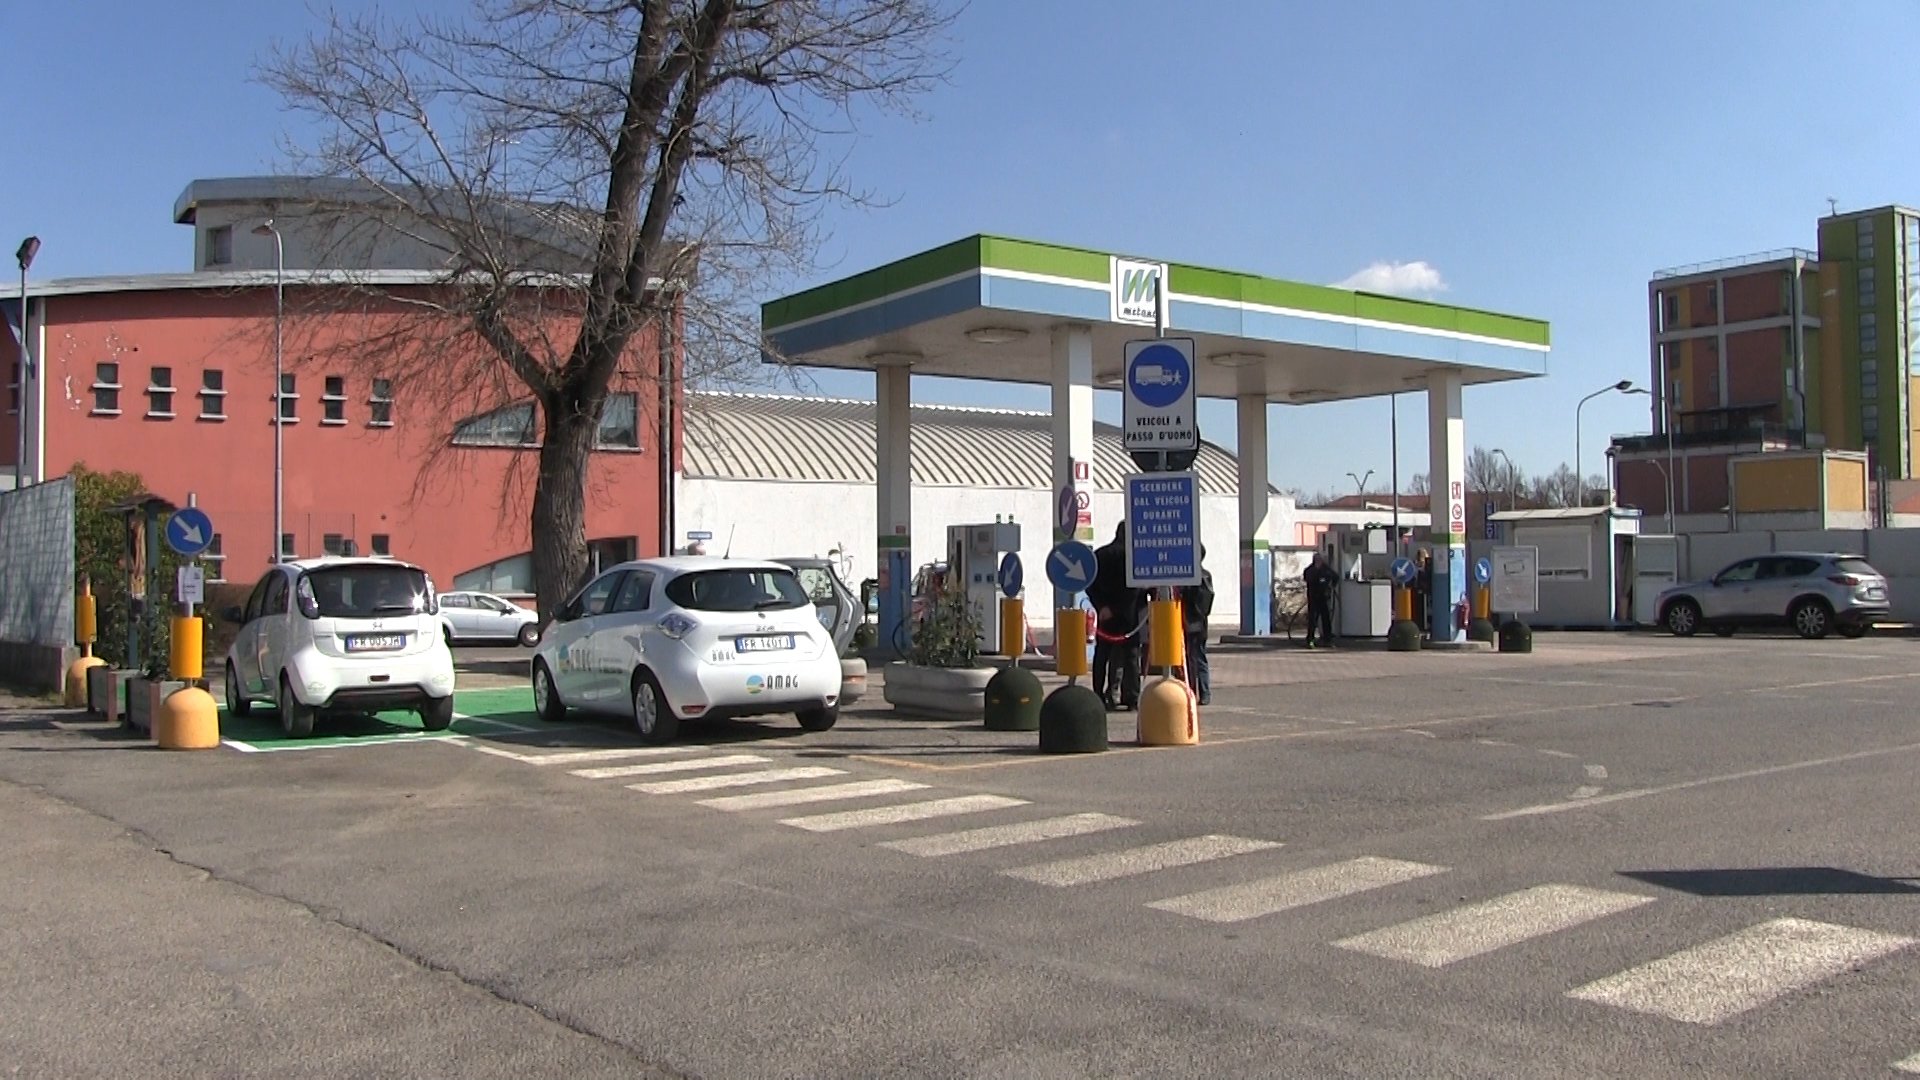 Alegas: da lunedì riprendono gli orari consueti del distributore a metano ad Alessandria